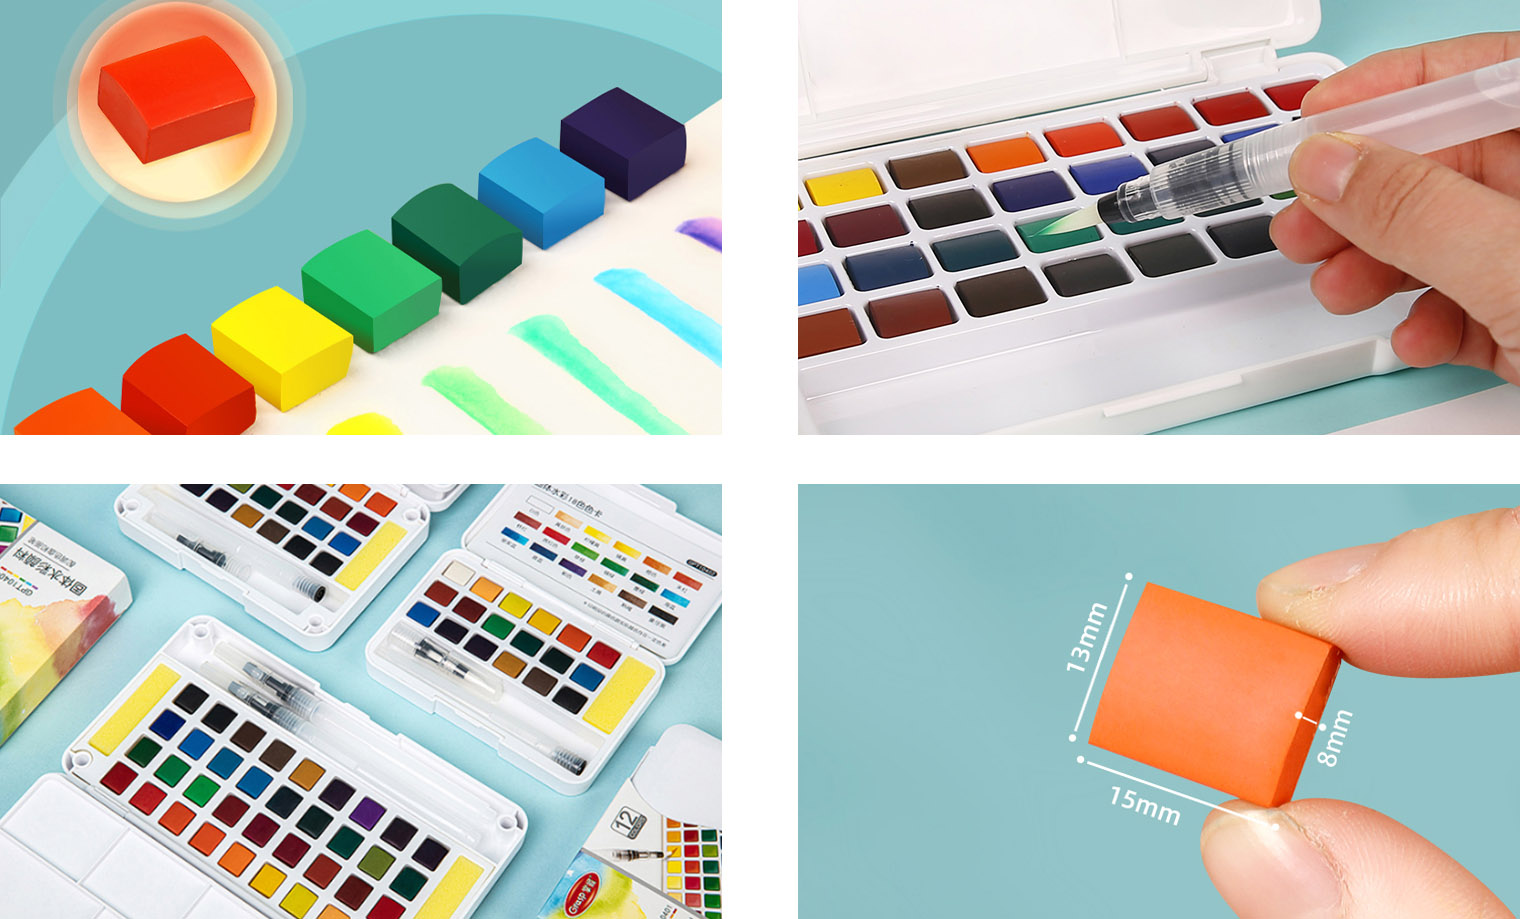 12/24/36/48 Color Solid Portable Watercolour Paint Sets